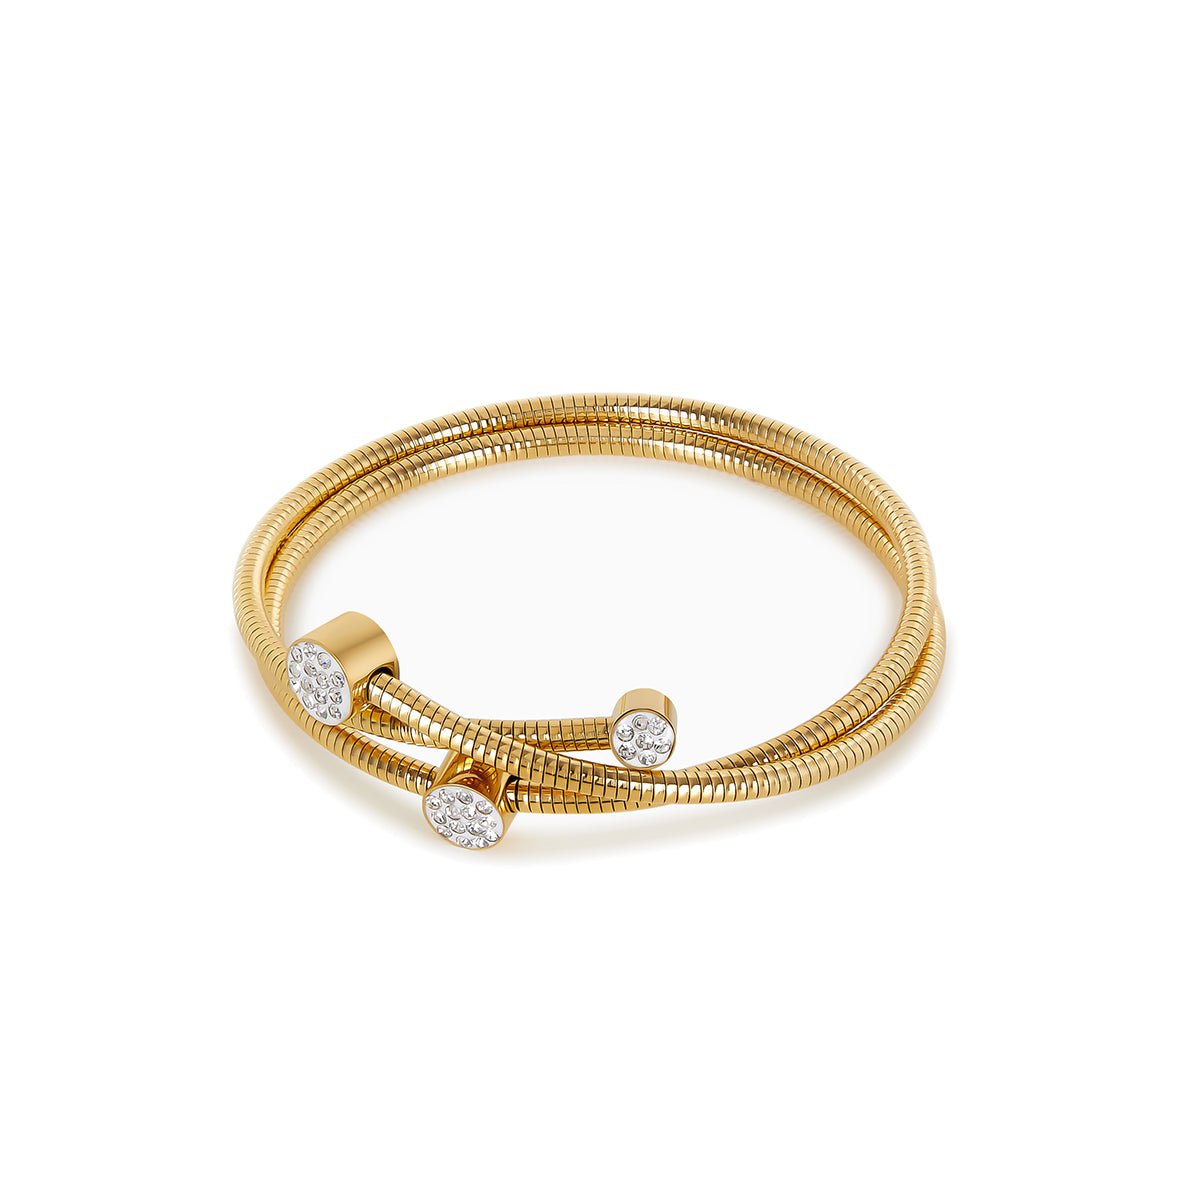 Bracelete Espiral Cristais Banhado em Ouro 18k - Murano Joias